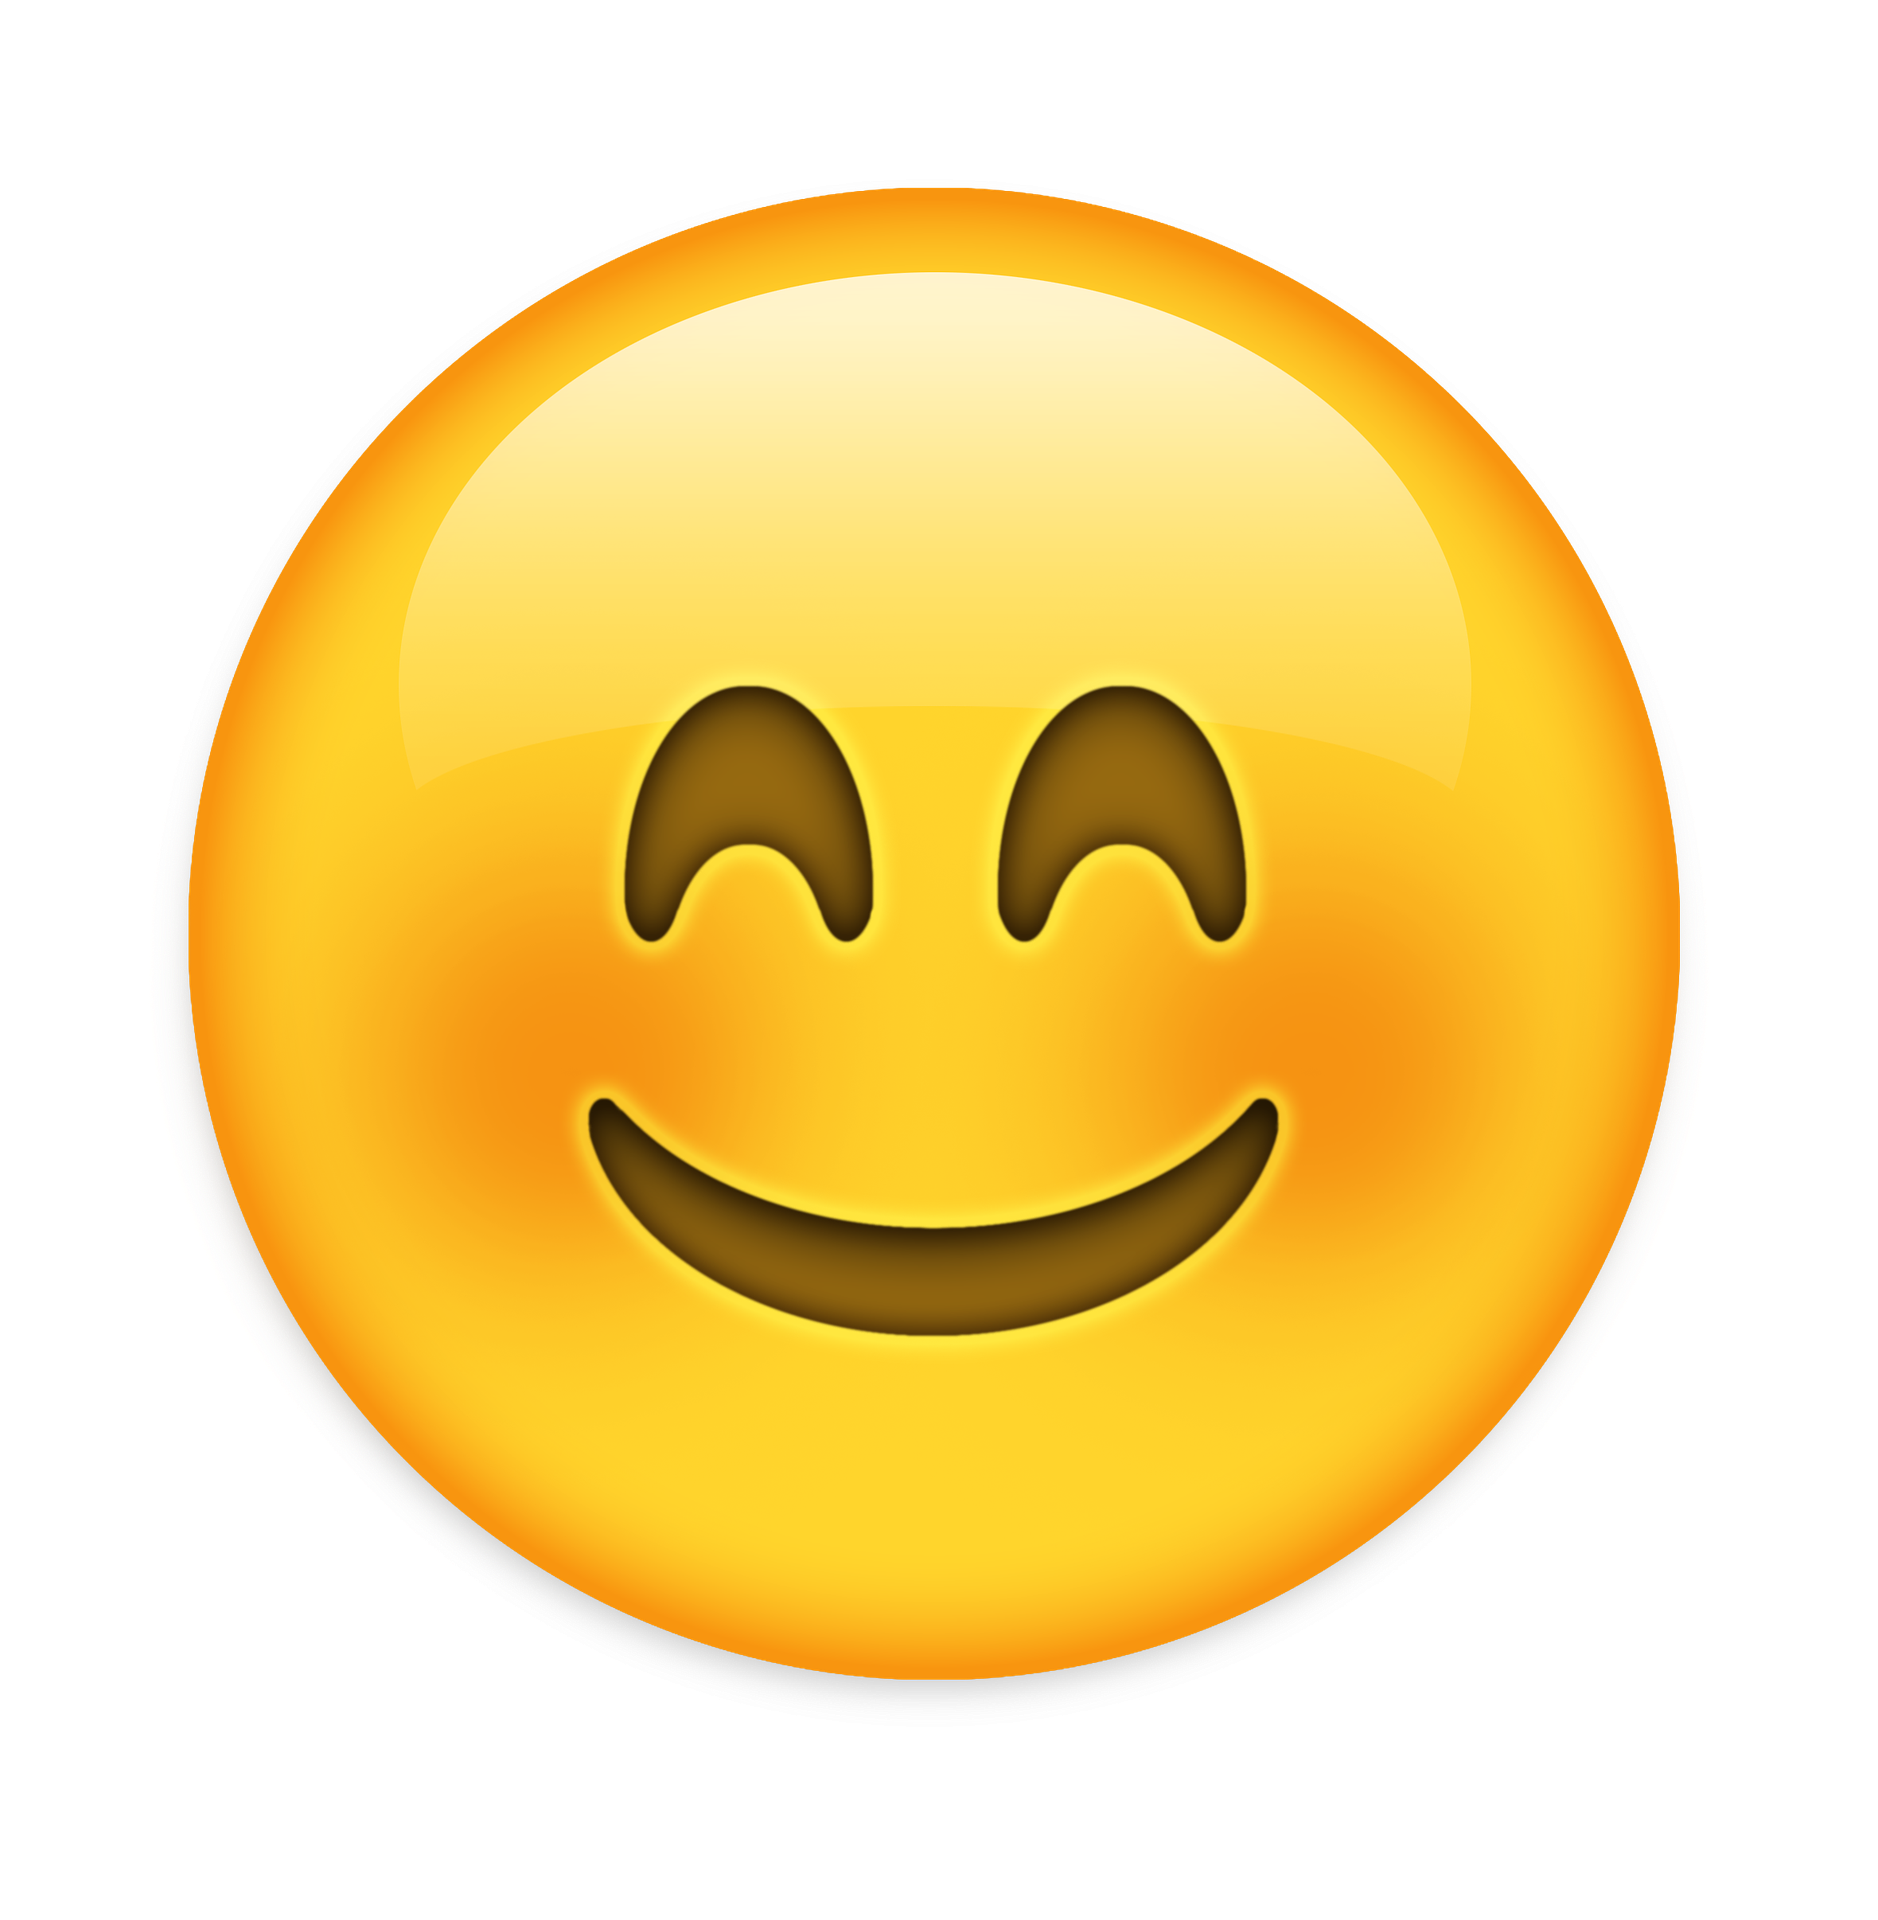 La imagen muestra un emoticono de una cara sonriente.